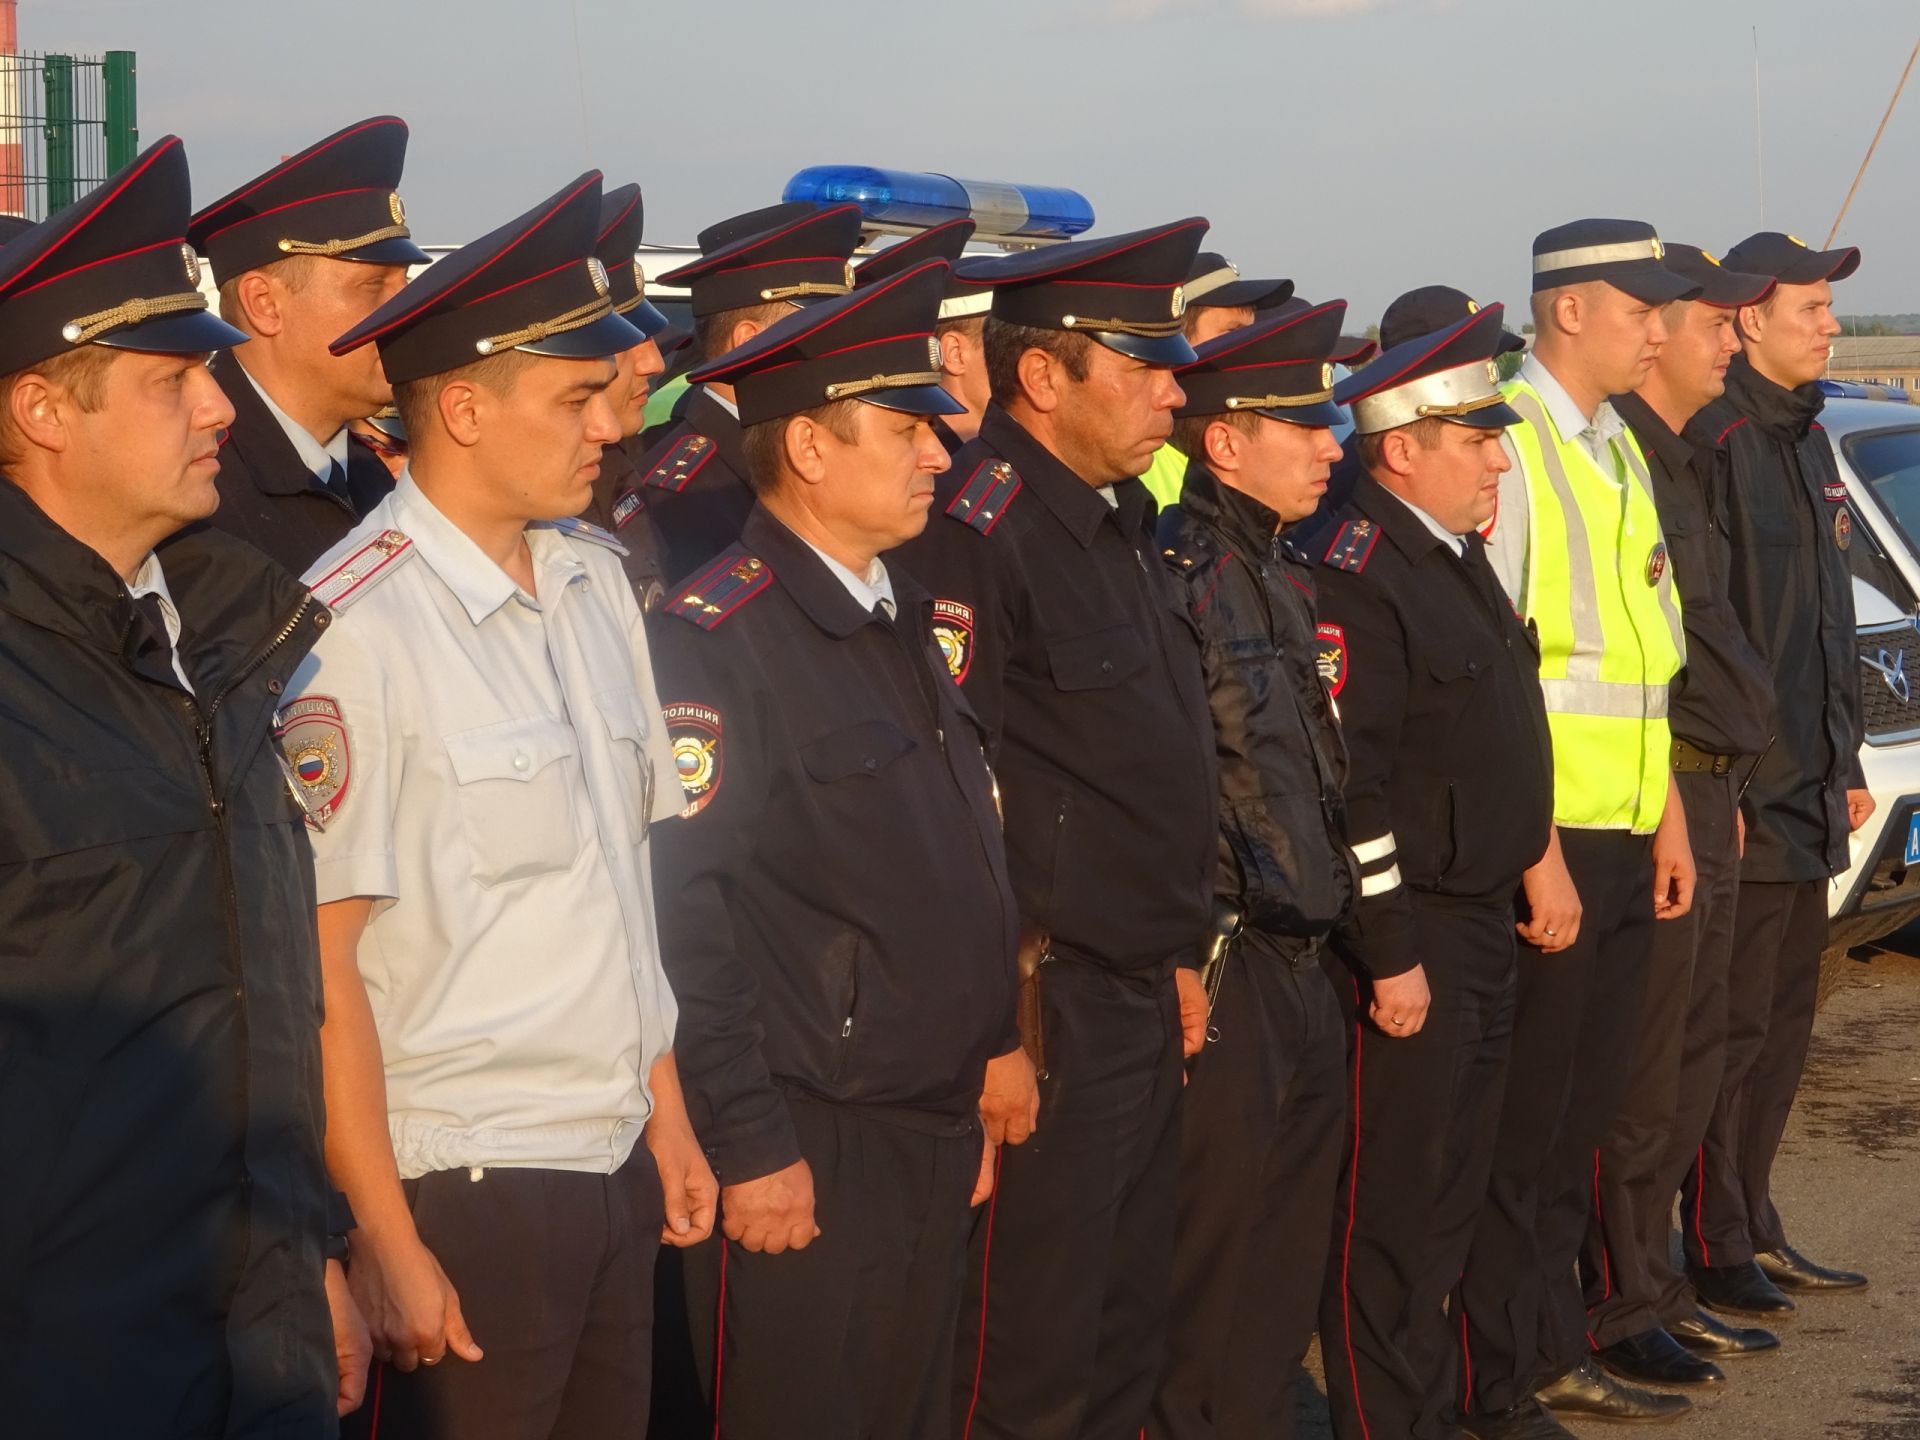 В Заинске состоялся гарнизонный развод нарядов полиции на службу по охране общественного порядка и безопасности